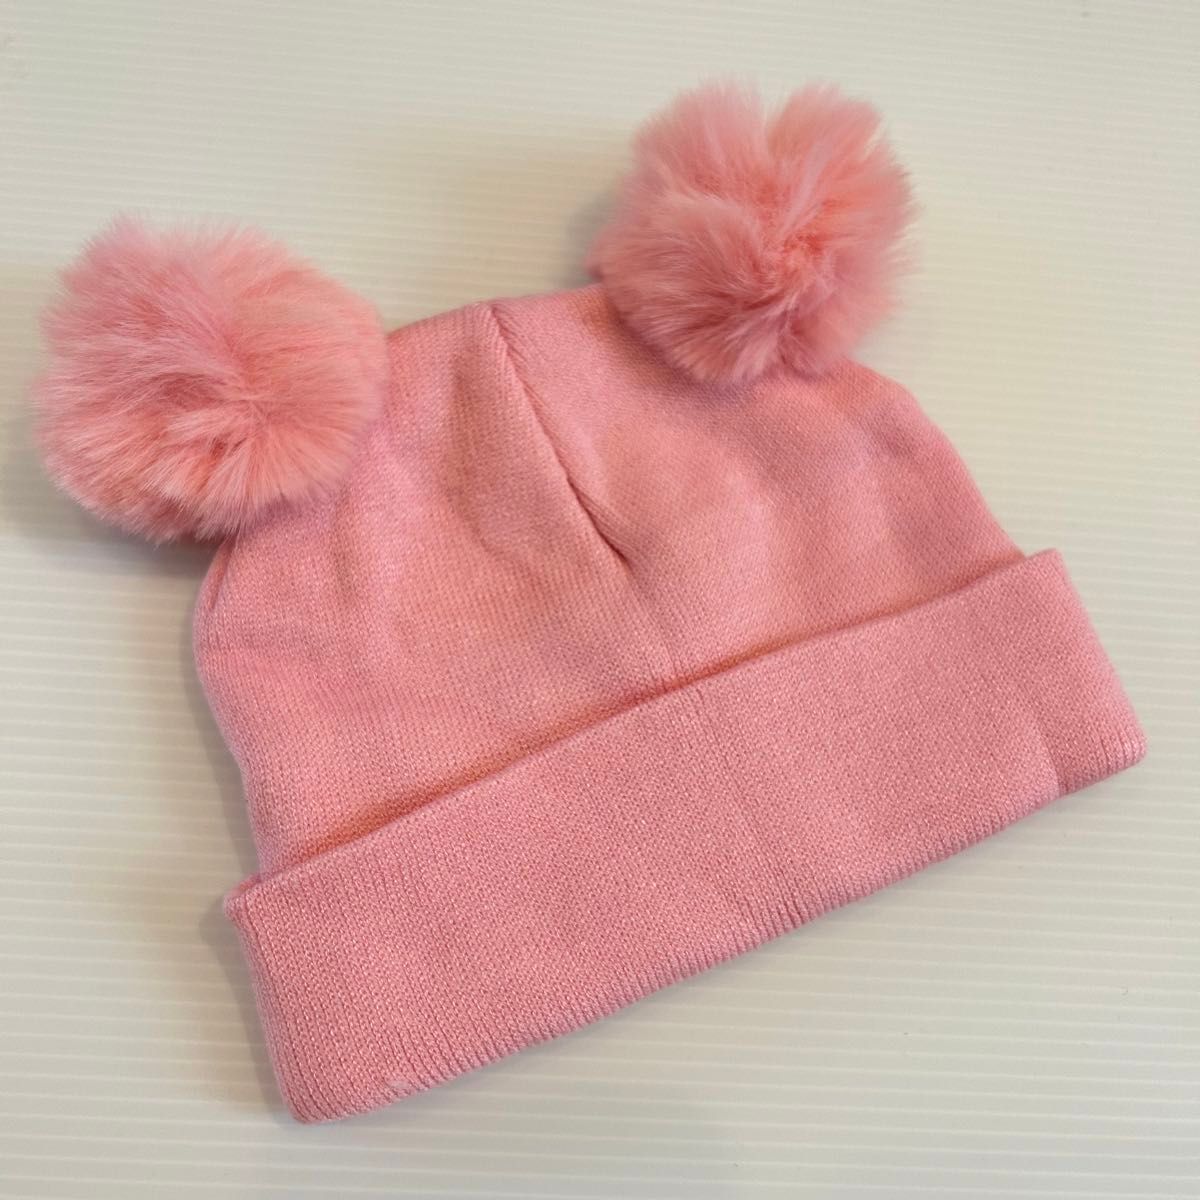 《新品》ベビー ふわふわ ボンボン耳付き ニット帽 柔らか素材 ピンク 帽子